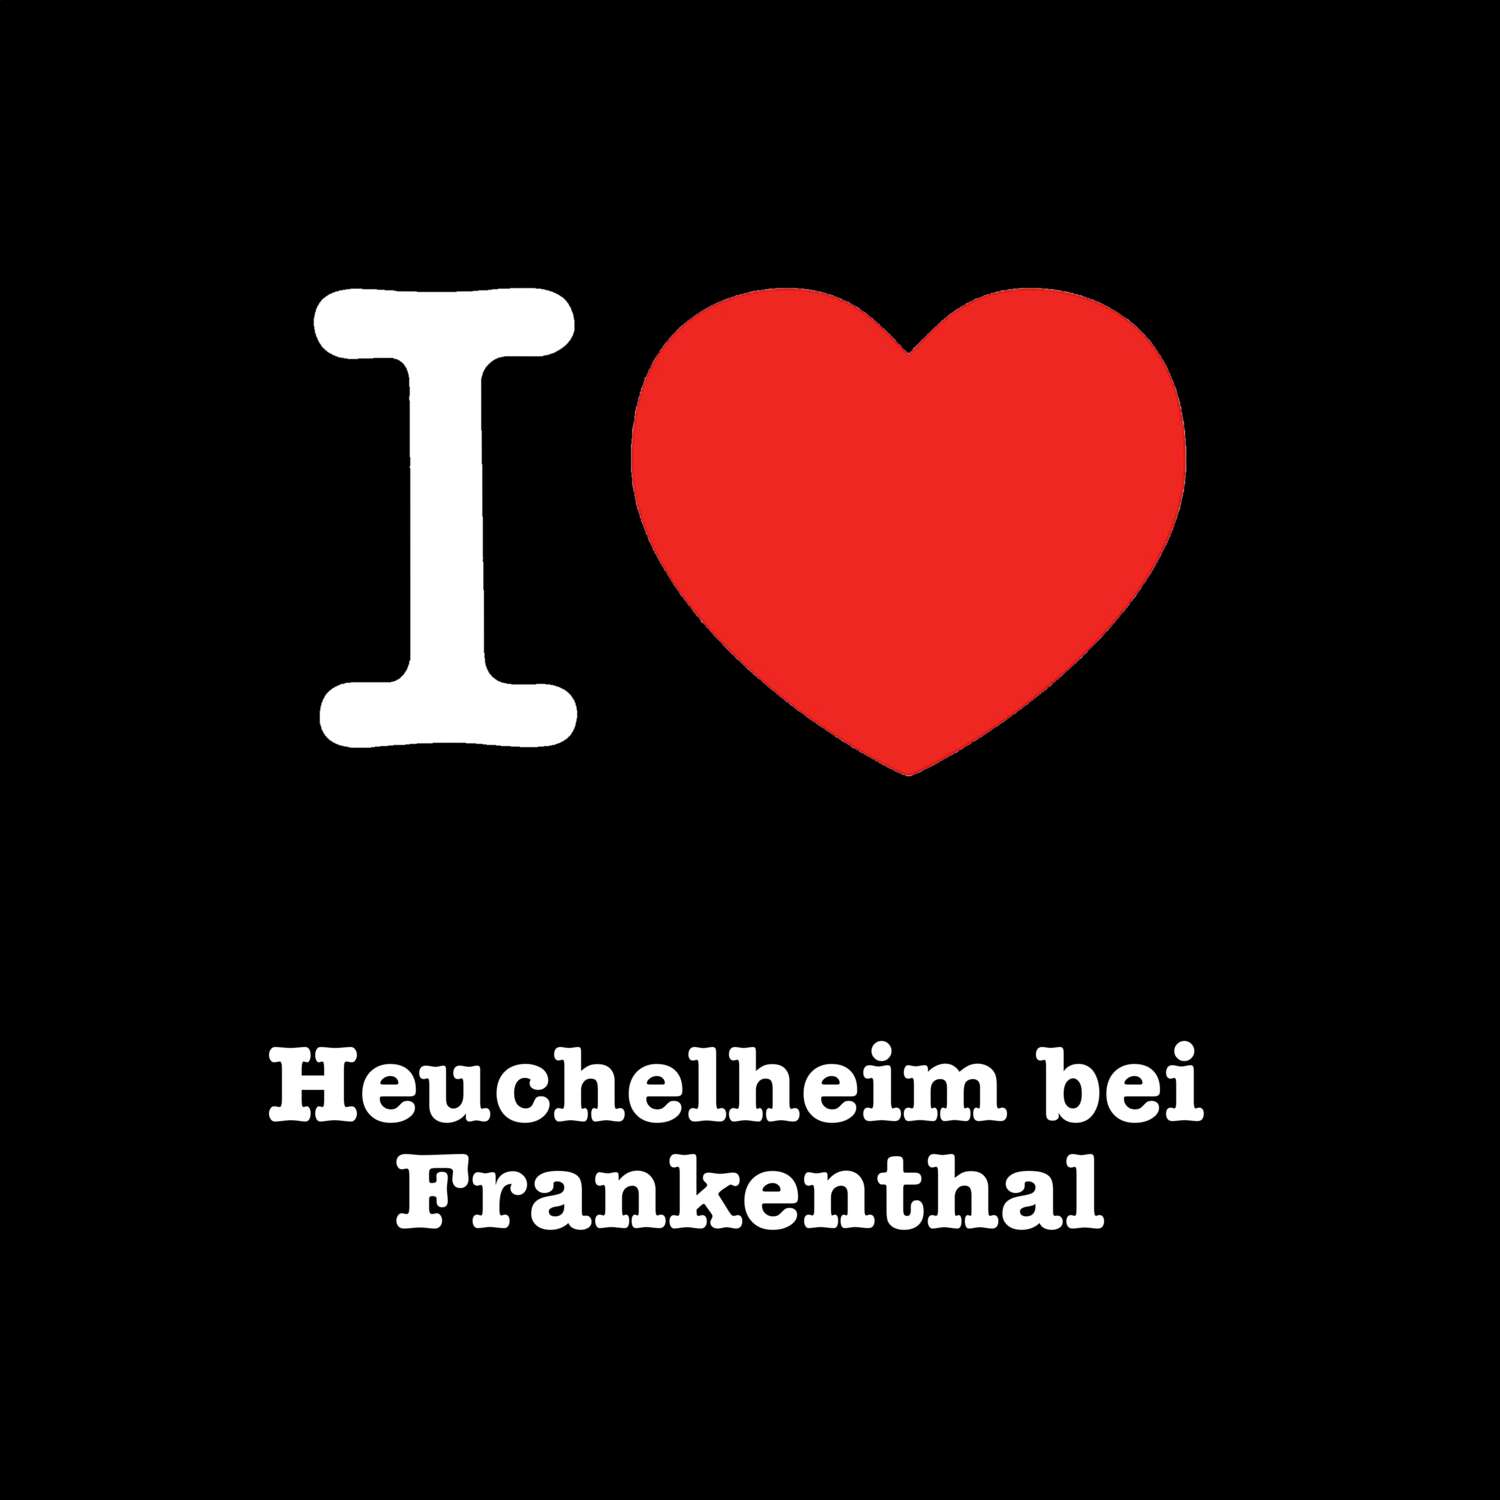 Heuchelheim bei Frankenthal T-Shirt »I love«